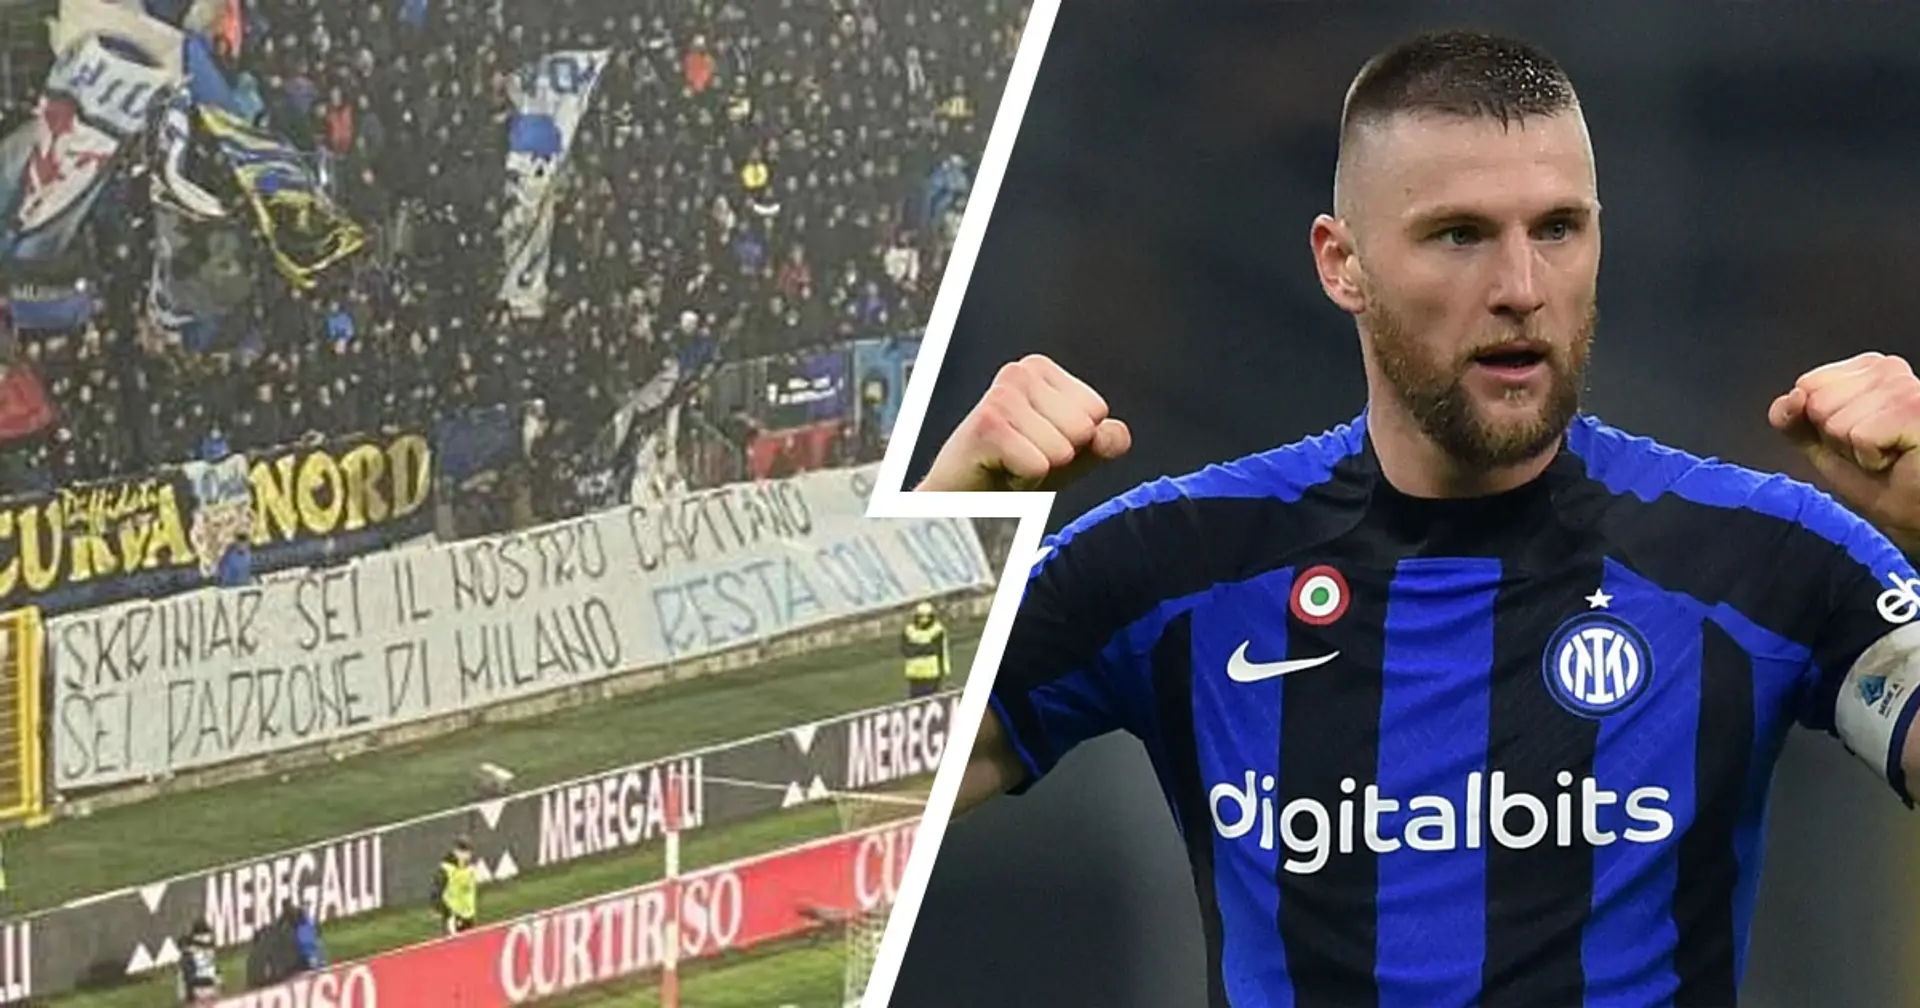 La Curva Nord si schiera con Milan Skriniar: bellissimo striscione dedicato al capitano dell'Inter